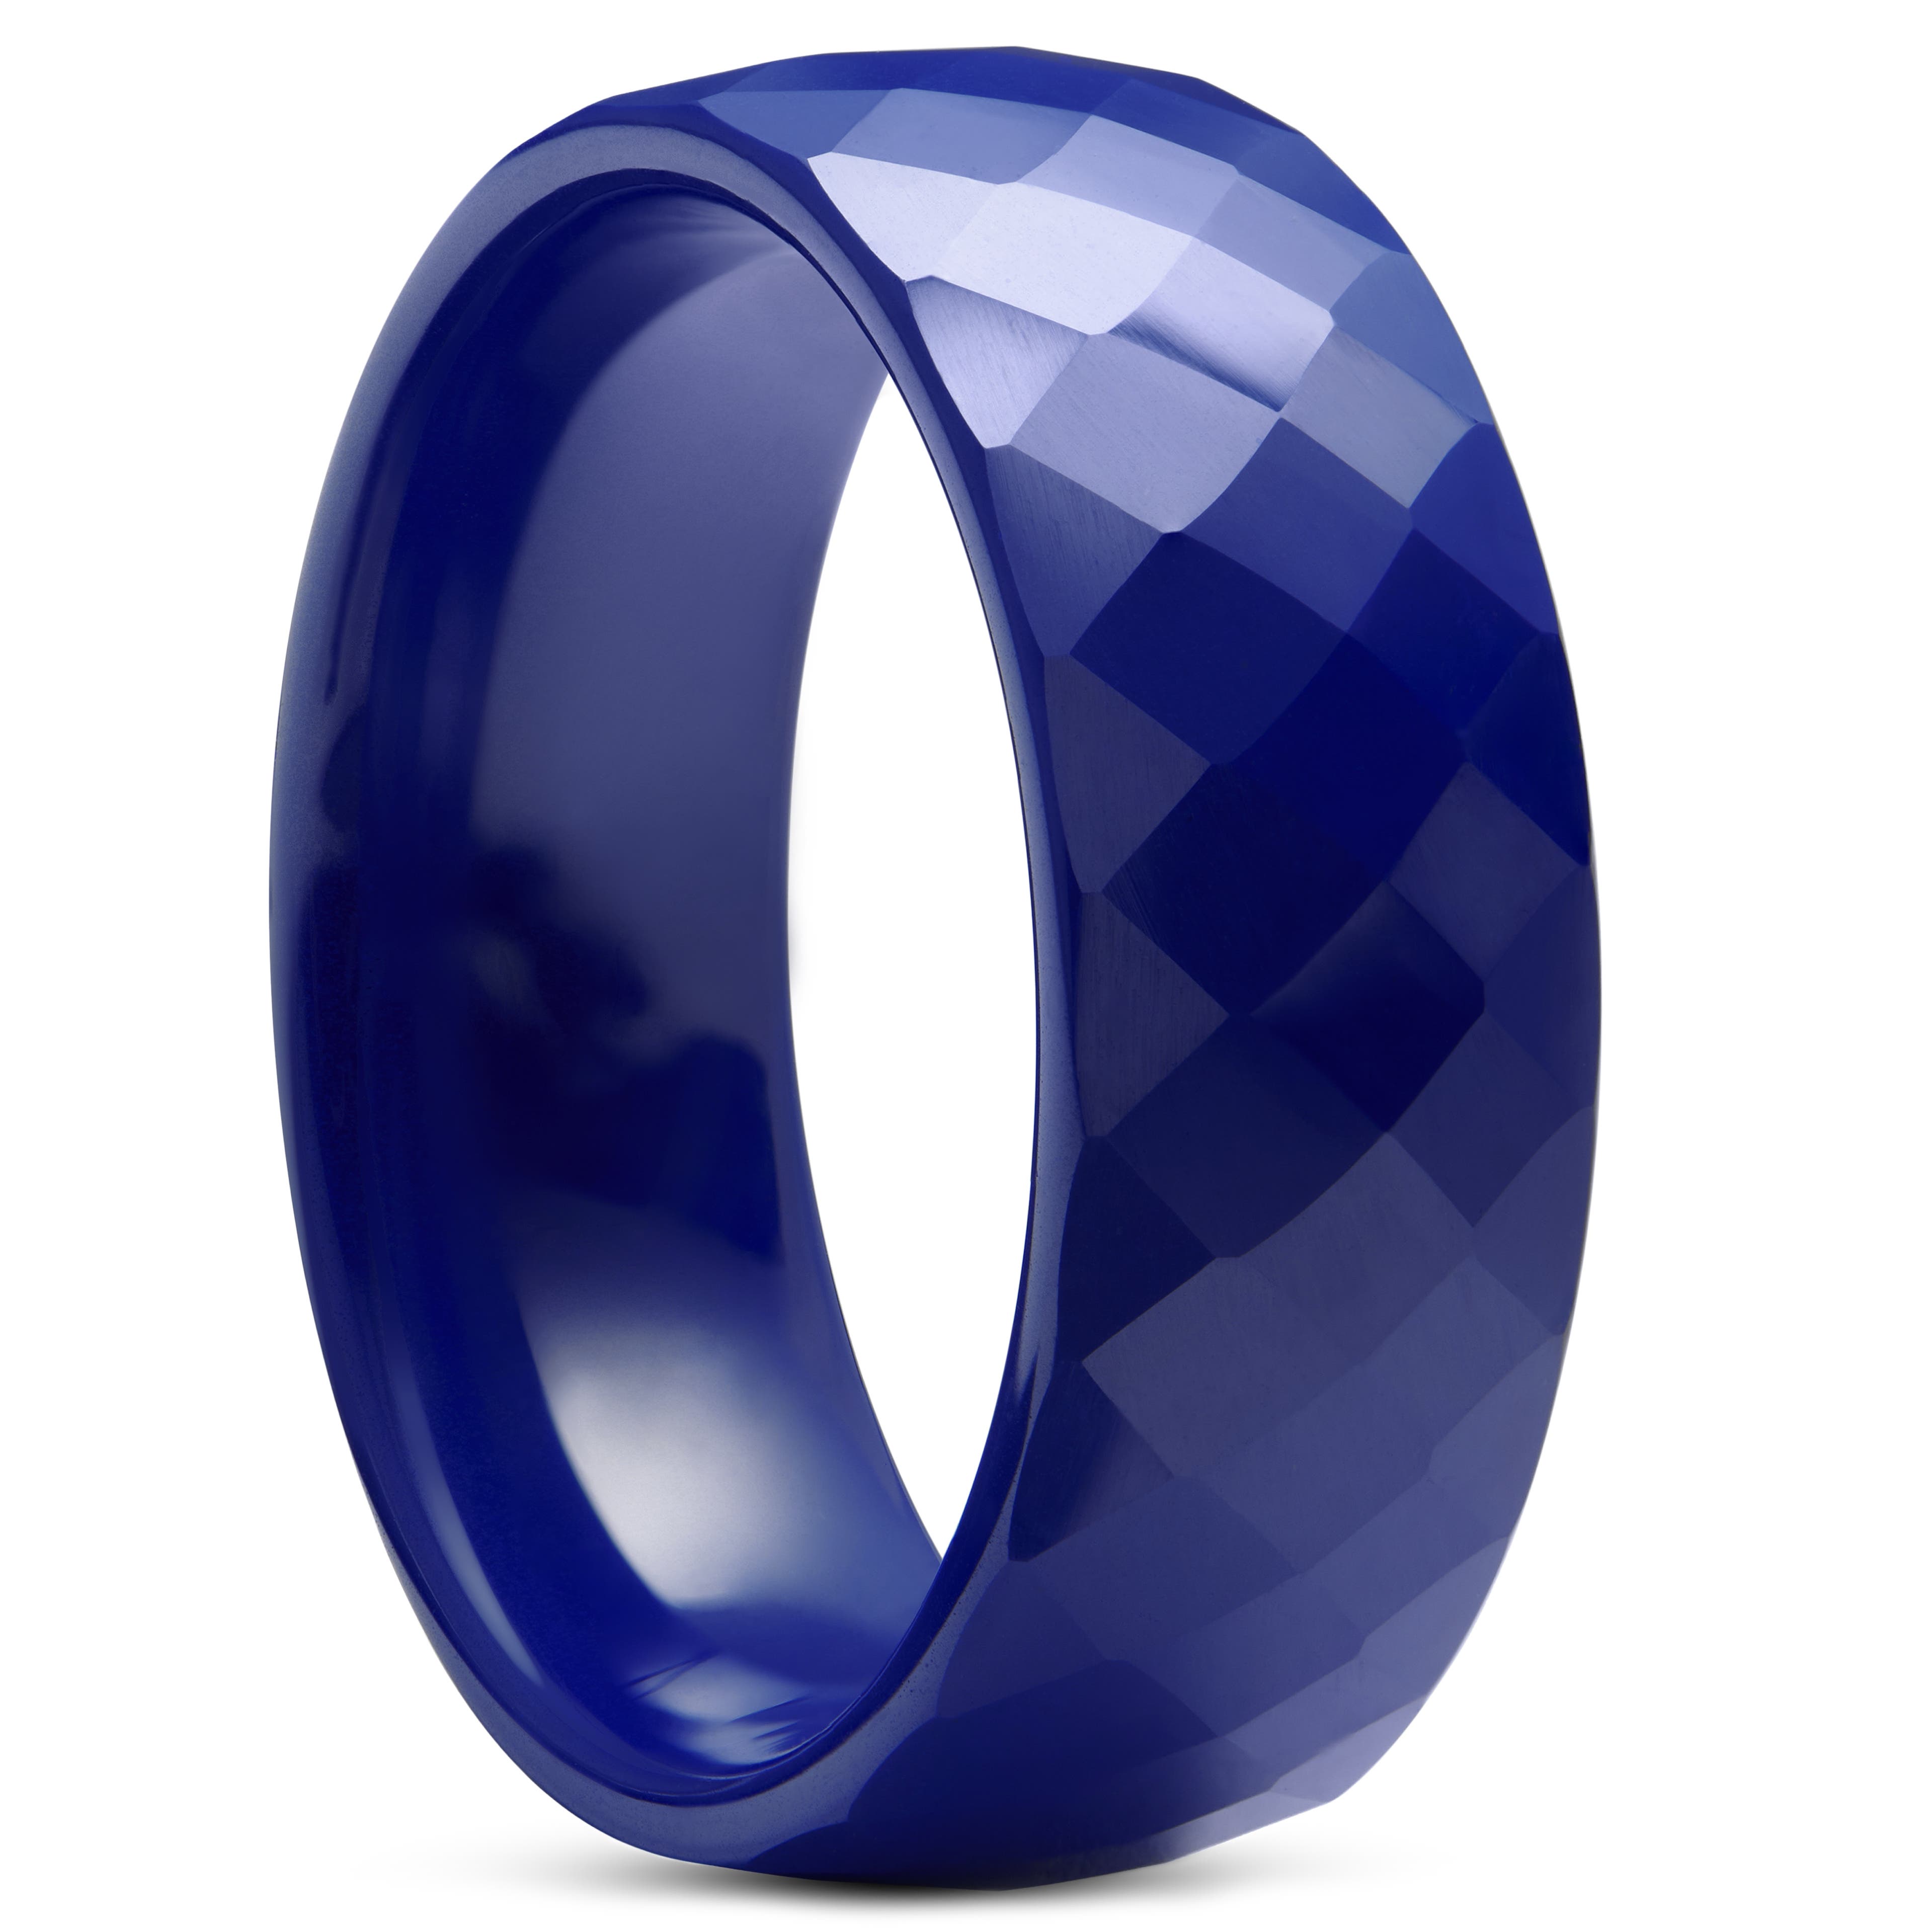 Modrý fazetový keramický prsten 